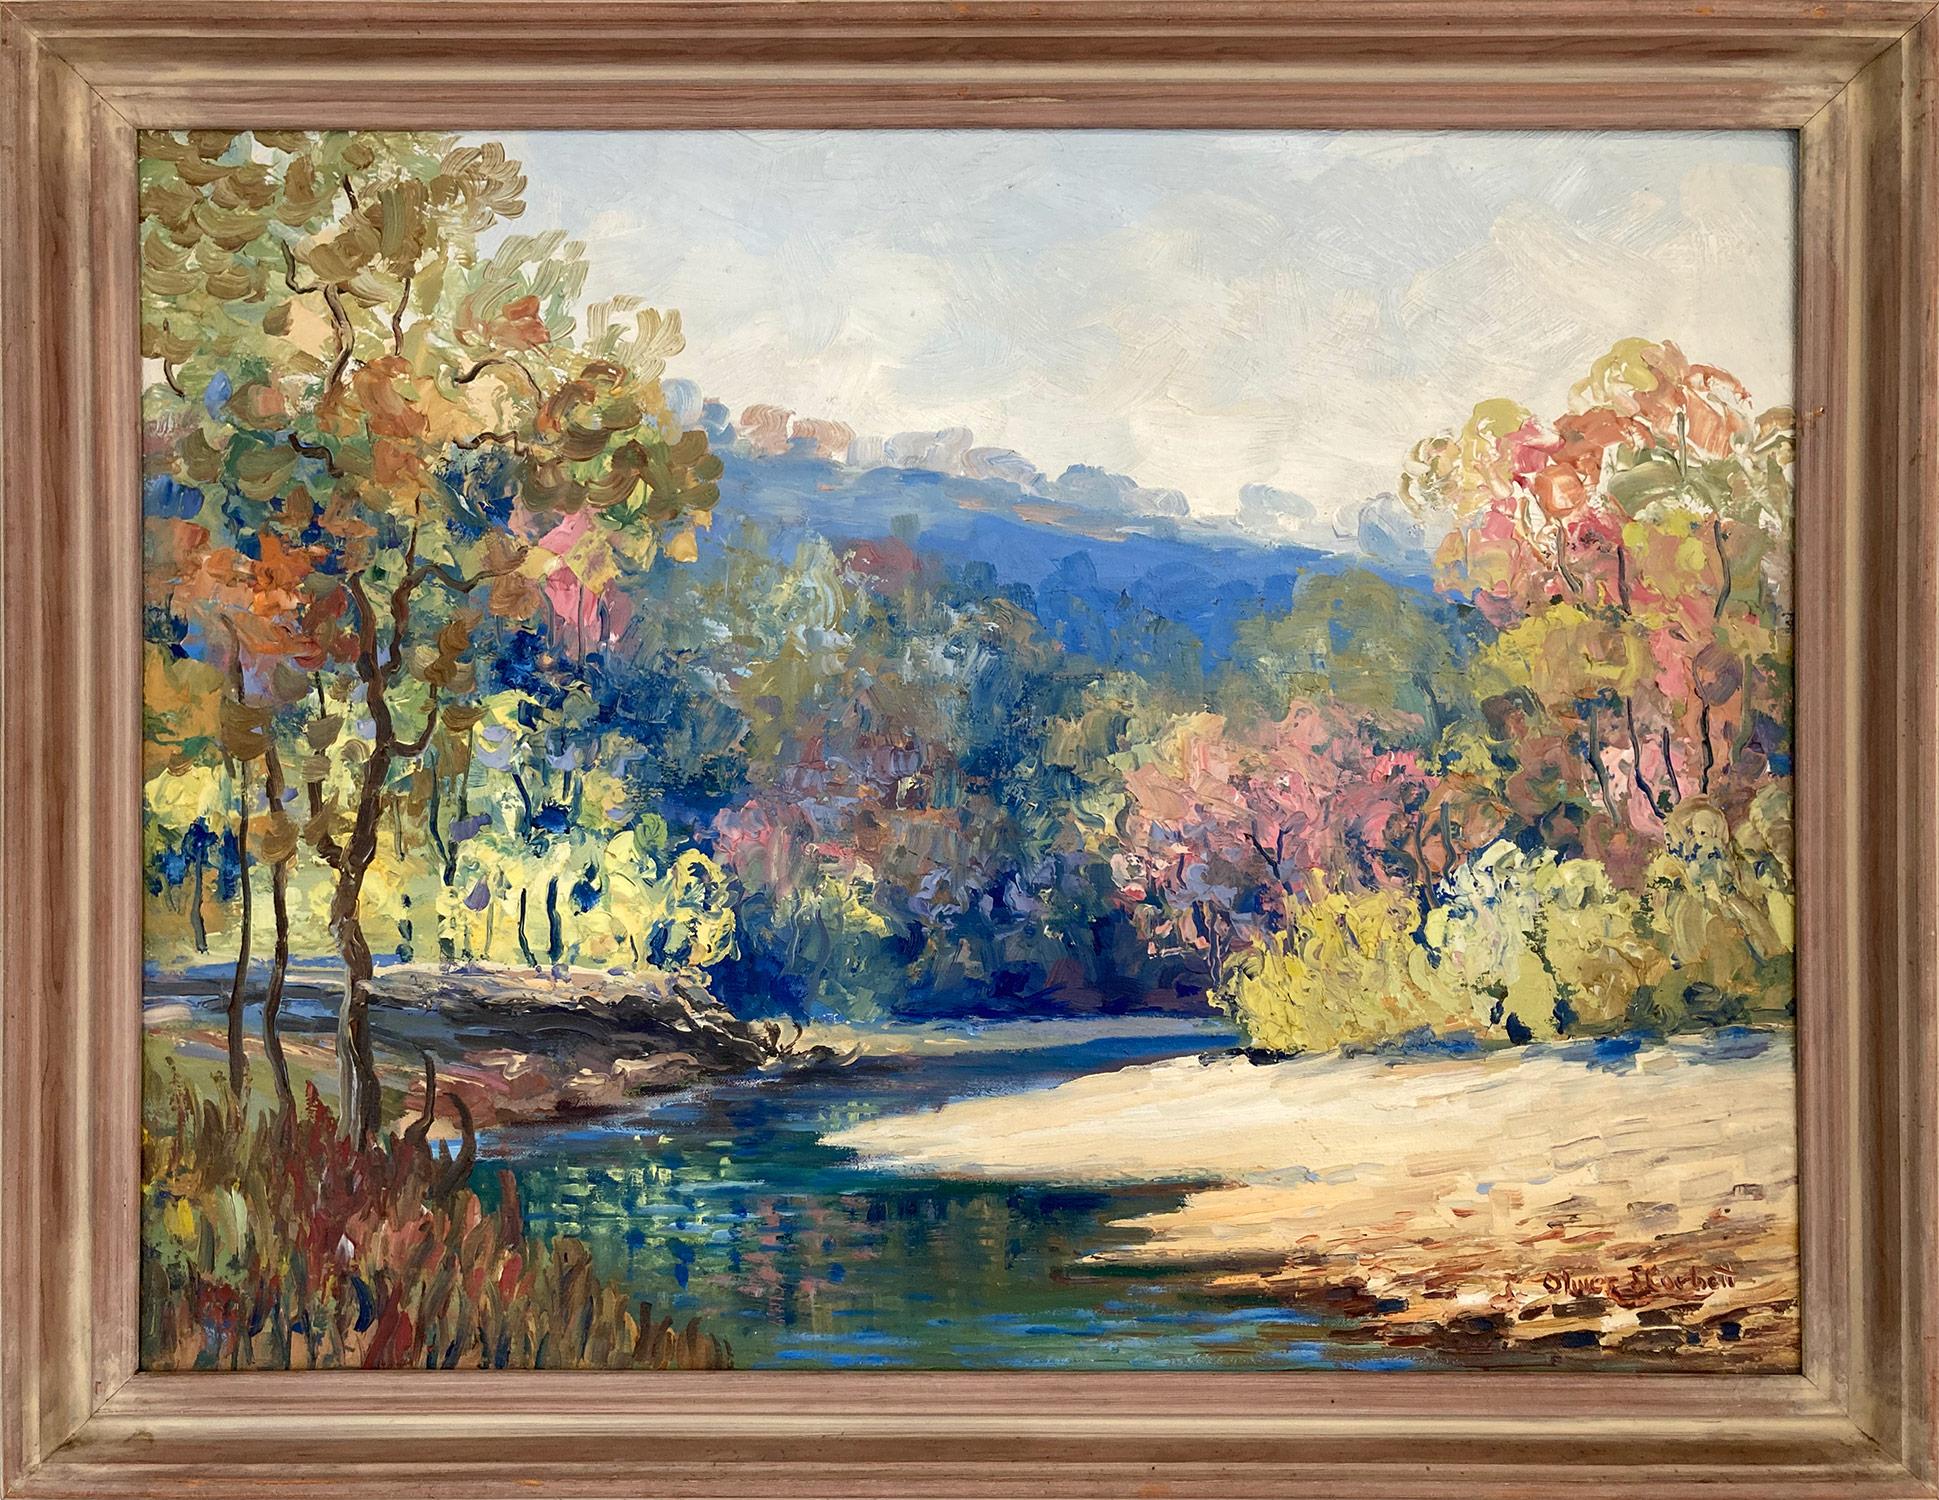 Landscape Painting Oliver Corbett   - "Along the River" - Peinture à l'huile américaine colorée du 20e siècle représentant des arbres de paysage